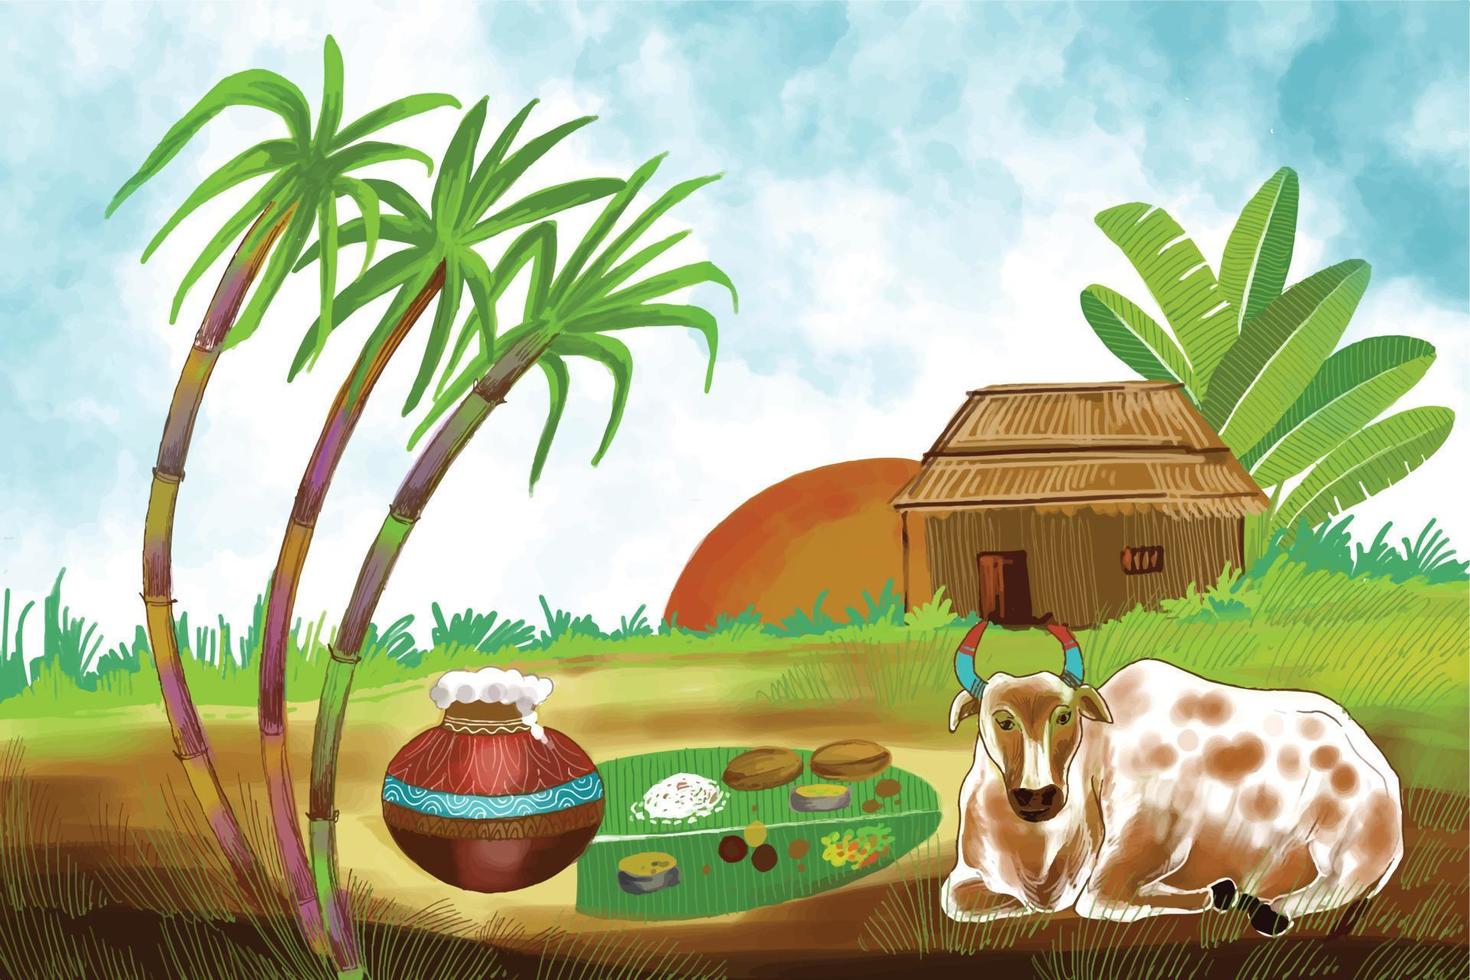 feliz festival de la cosecha navideña pongal de tamil nadu sur de la india diseño de tarjetas de felicitación vector